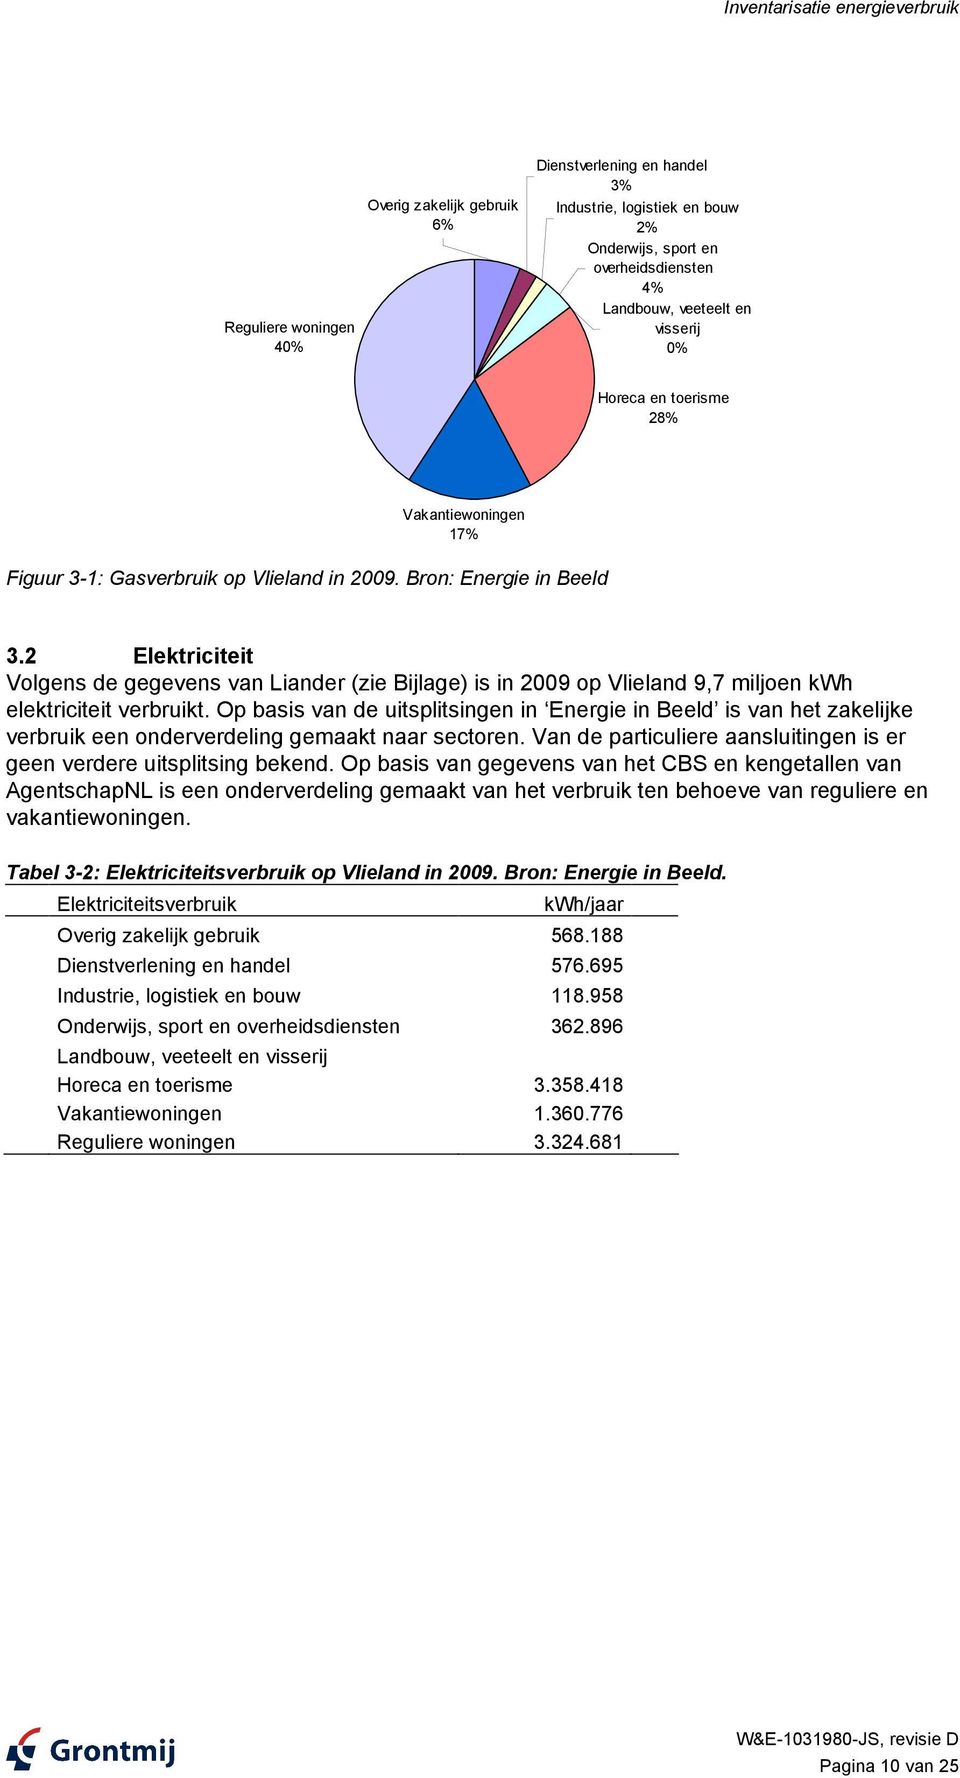 2 Elektriciteit Volgens de gegevens van Liander (zie Bijlage) is in 2009 op Vlieland 9,7 miljoen kwh elektriciteit verbruikt.